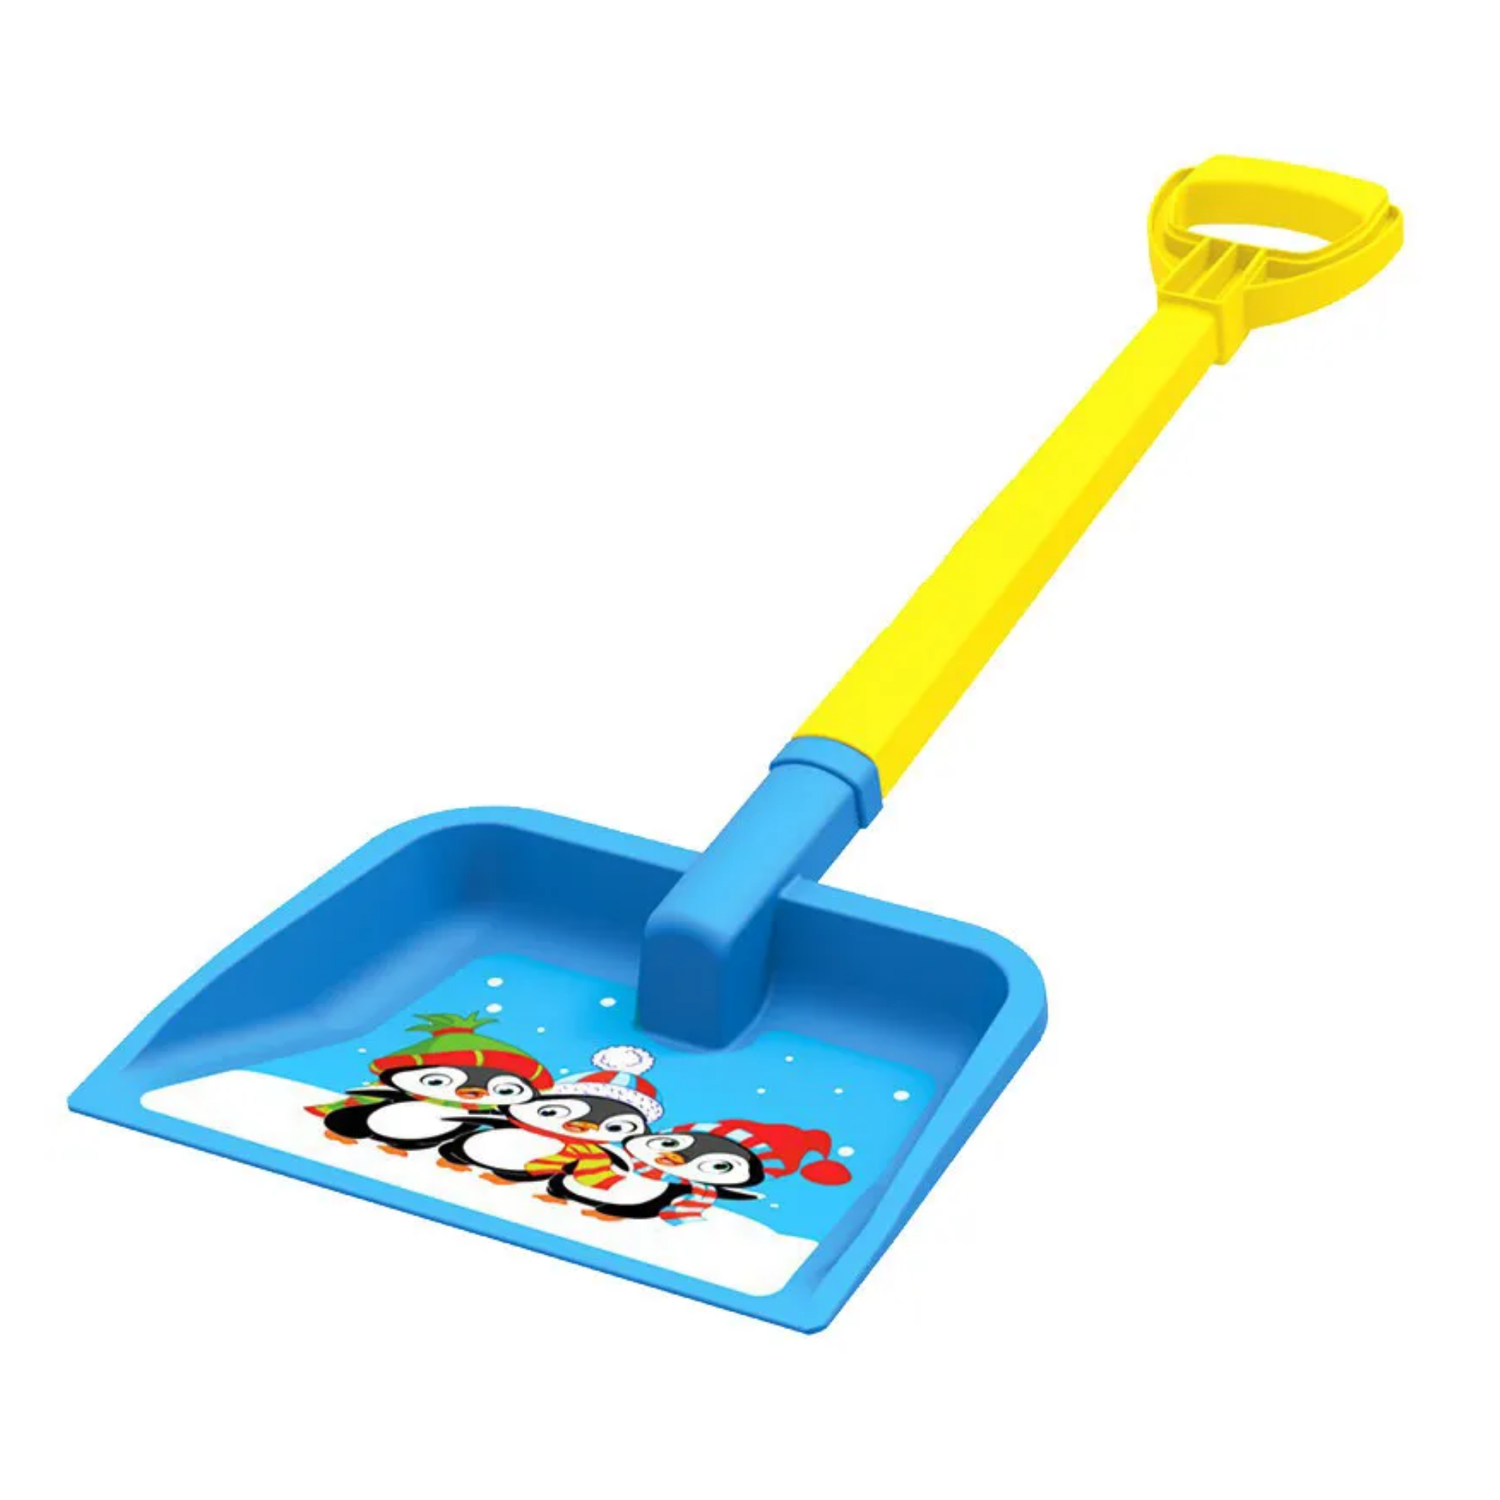 Детская лопата Технок Для игры с песком и снегом 68 см - фото 2